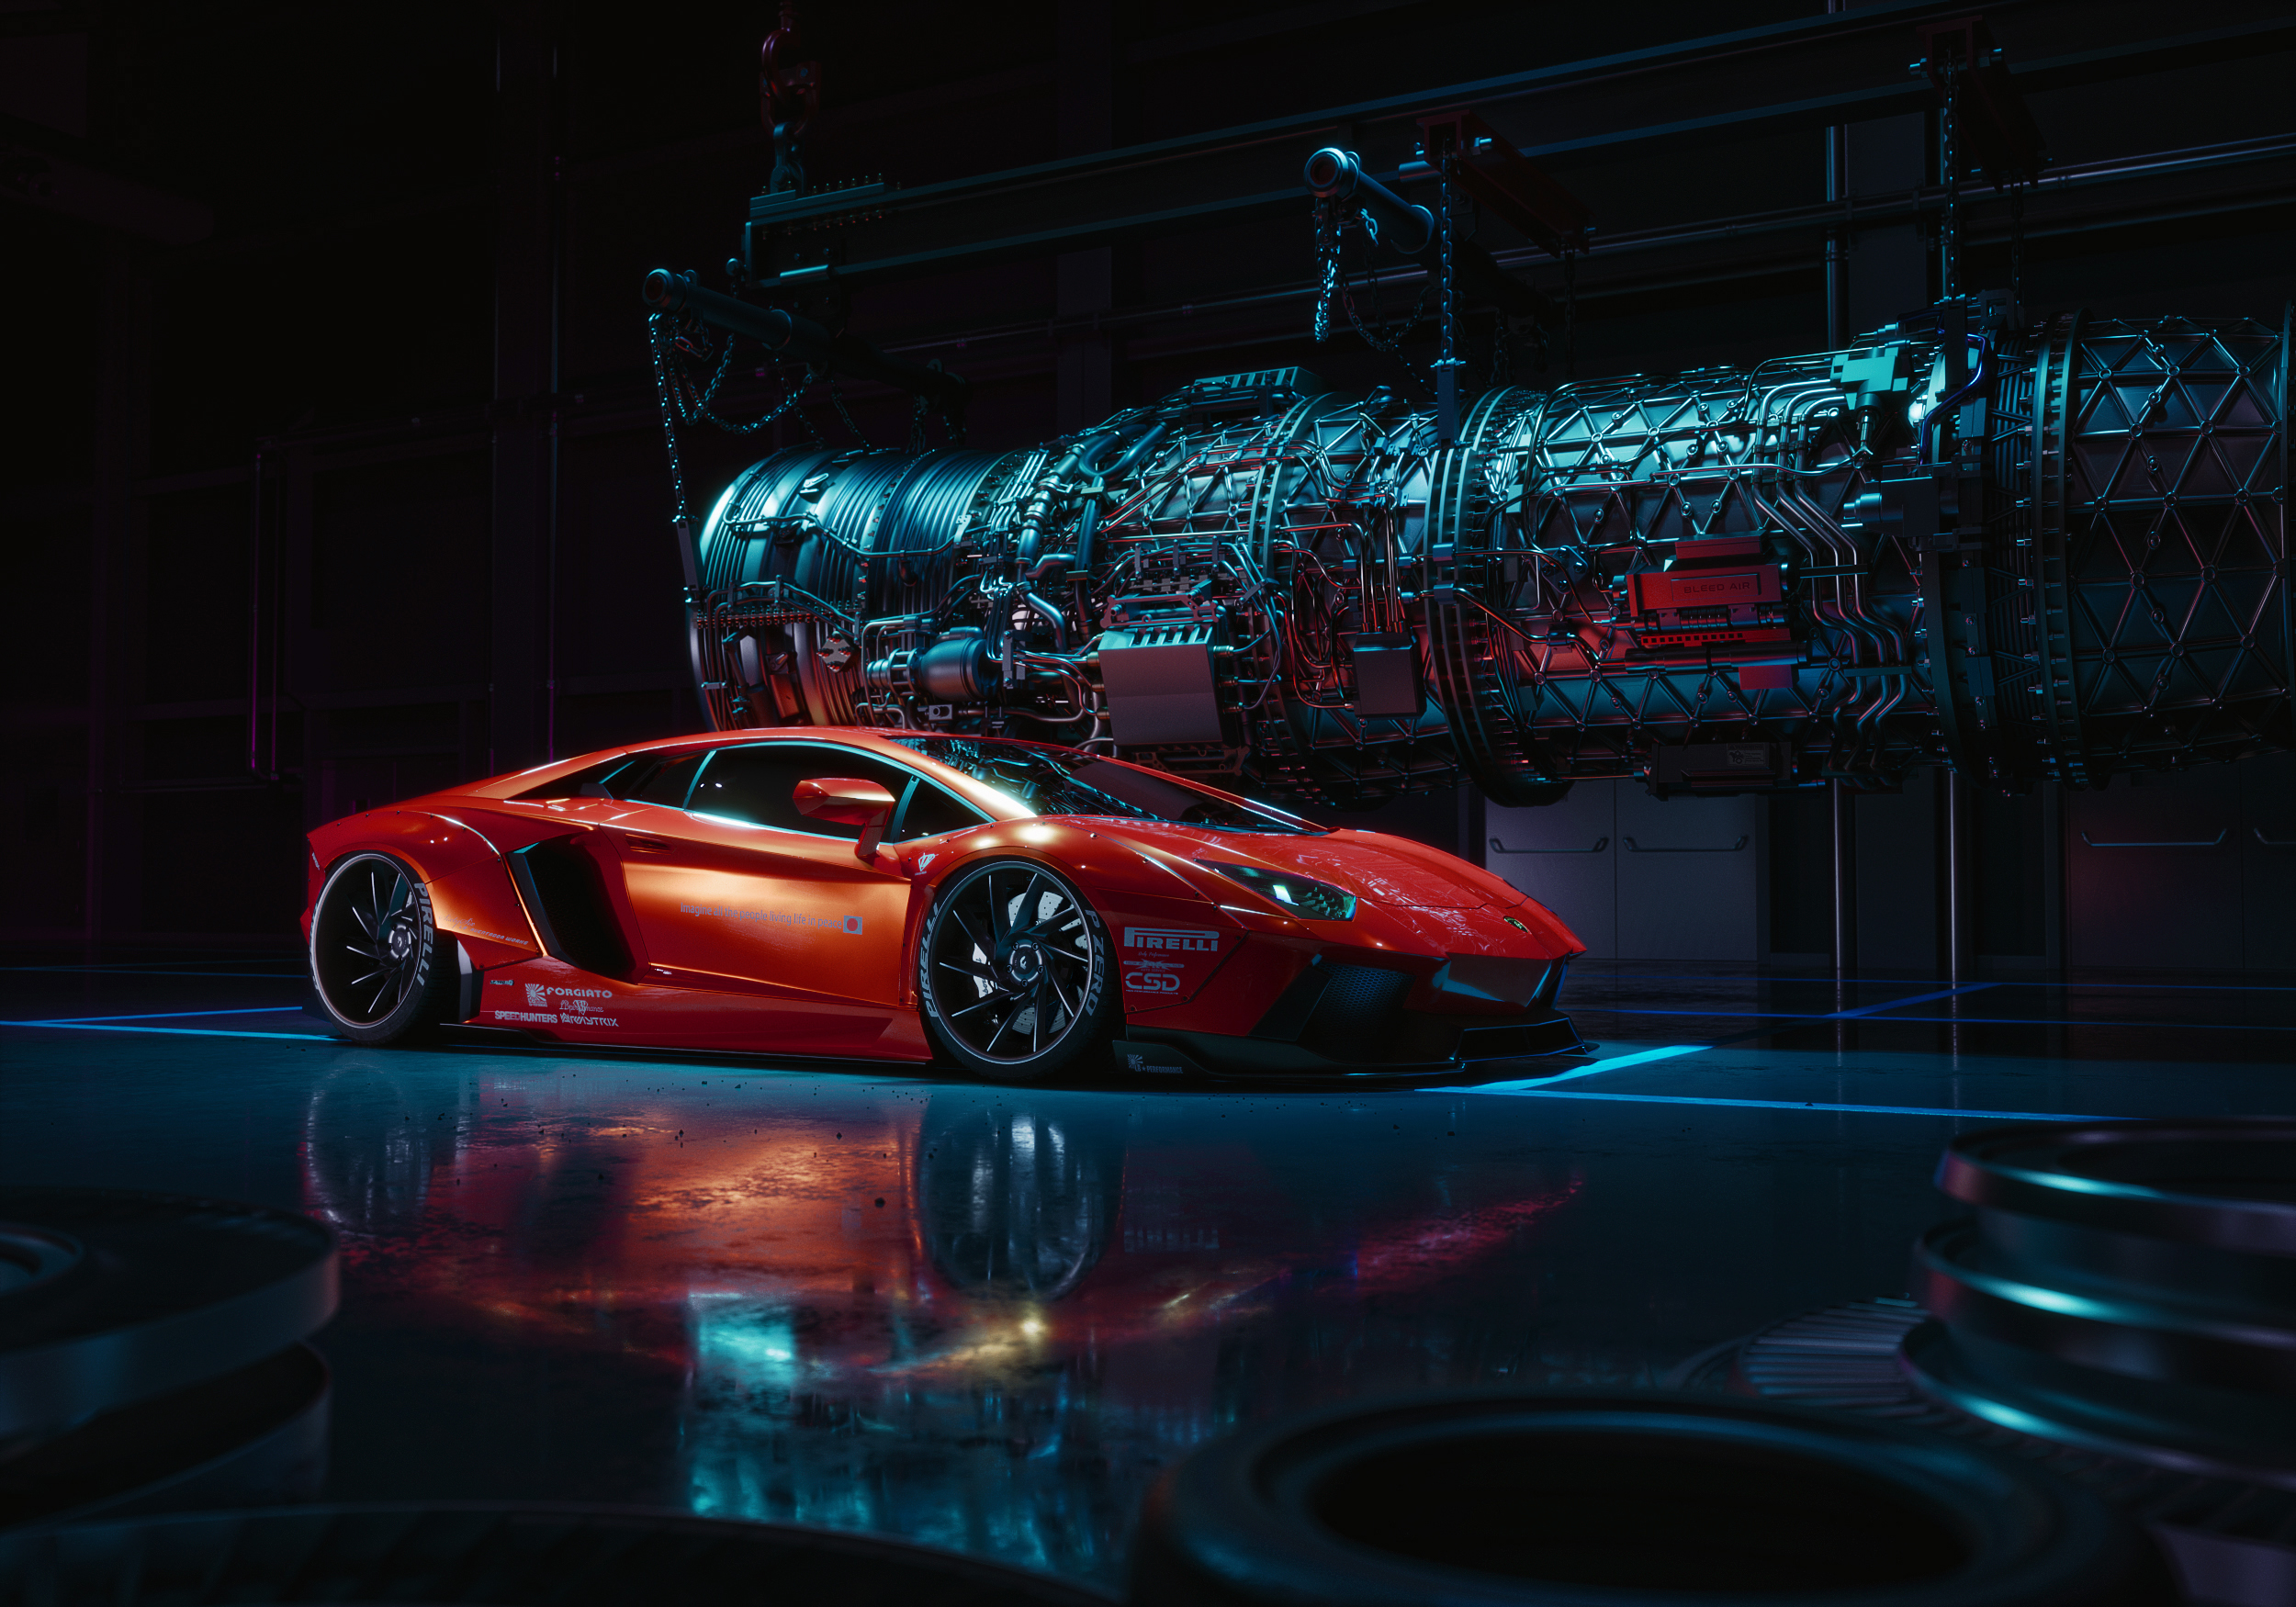 Lamborghini Lamborghini Aventador Car Luxury Cars Red Cars Reflection Dark CGi Digital Art Artwork 3 2500x1750